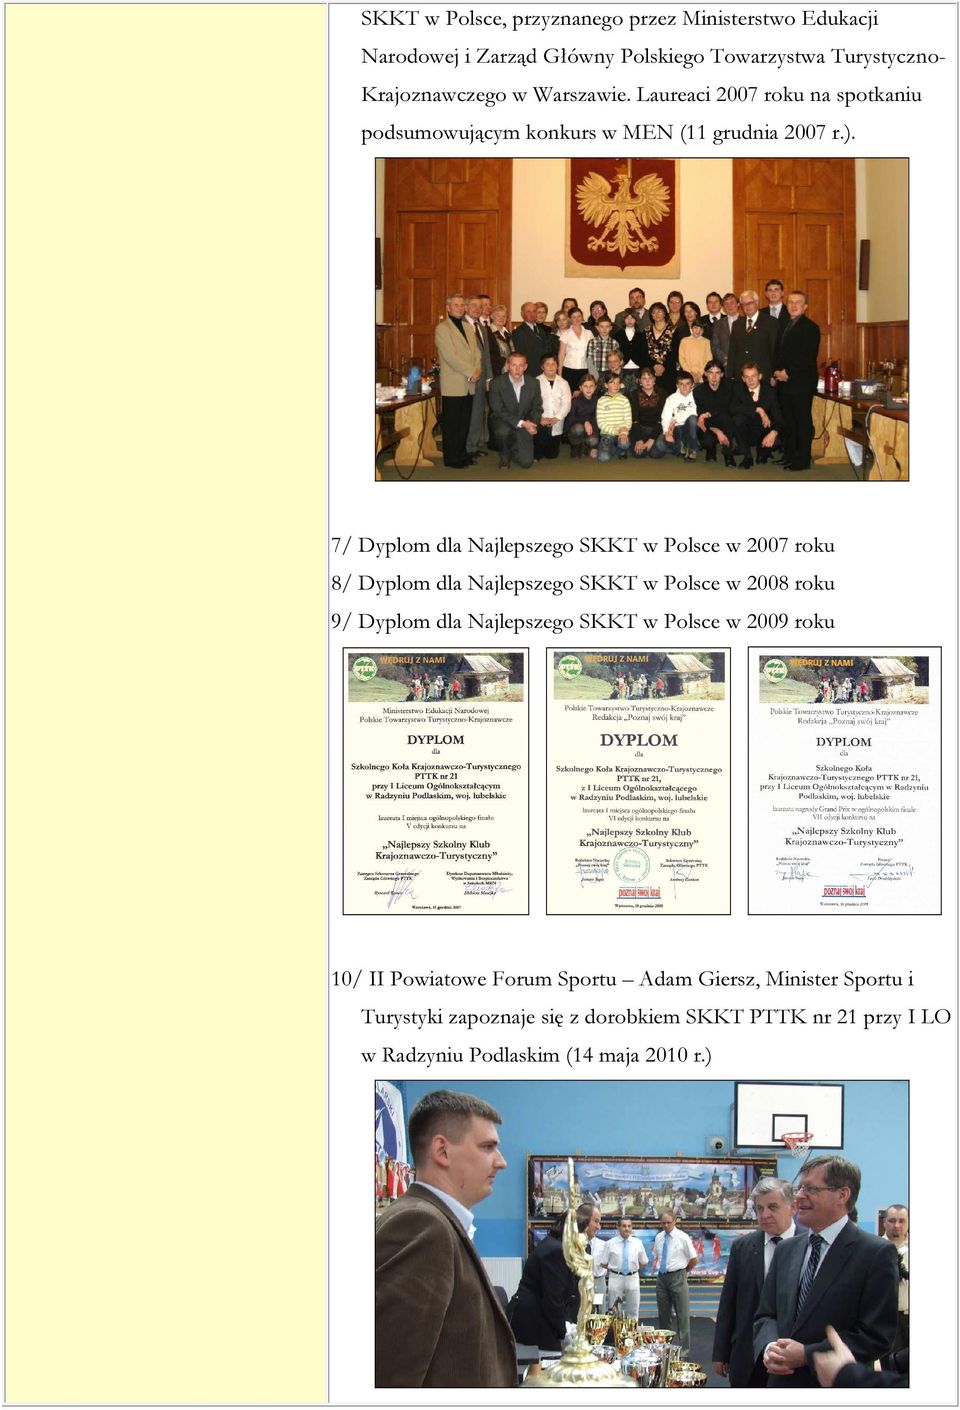 7/ Dyplom dla Najlepszego SKKT w Polsce w 2007 roku 8/ Dyplom dla Najlepszego SKKT w Polsce w 2008 roku 9/ Dyplom dla Najlepszego SKKT